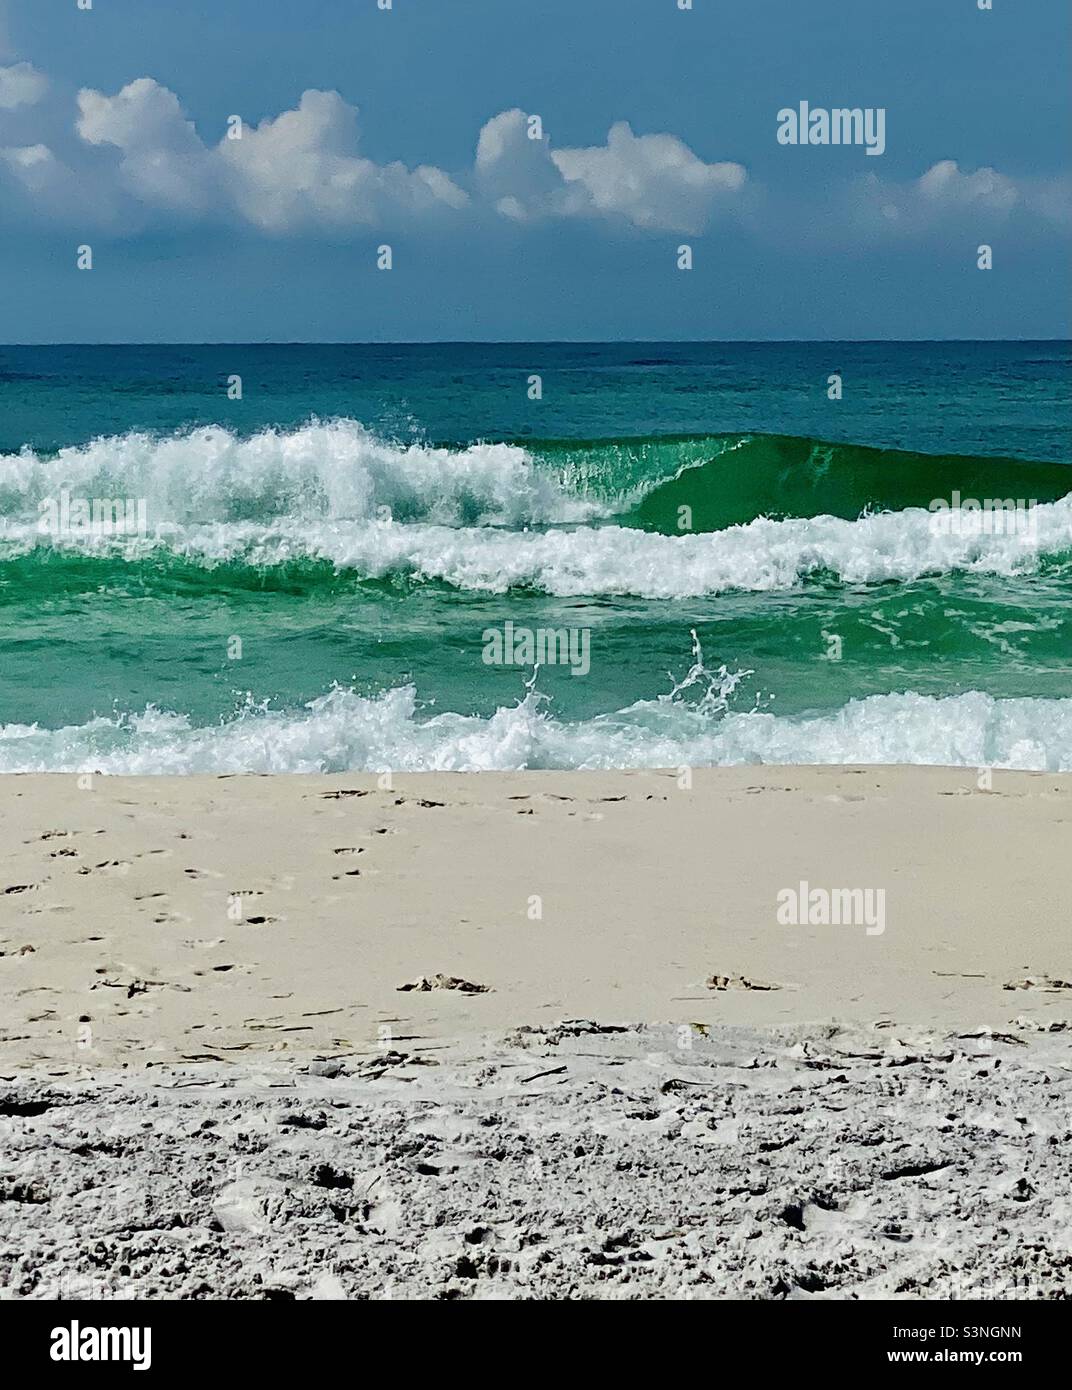 Onde che infrangono, acqua verde smeraldo e sabbia bianca polverosa su una spiaggia idilliaca al sole; su Okaloosa Island Florida Foto Stock